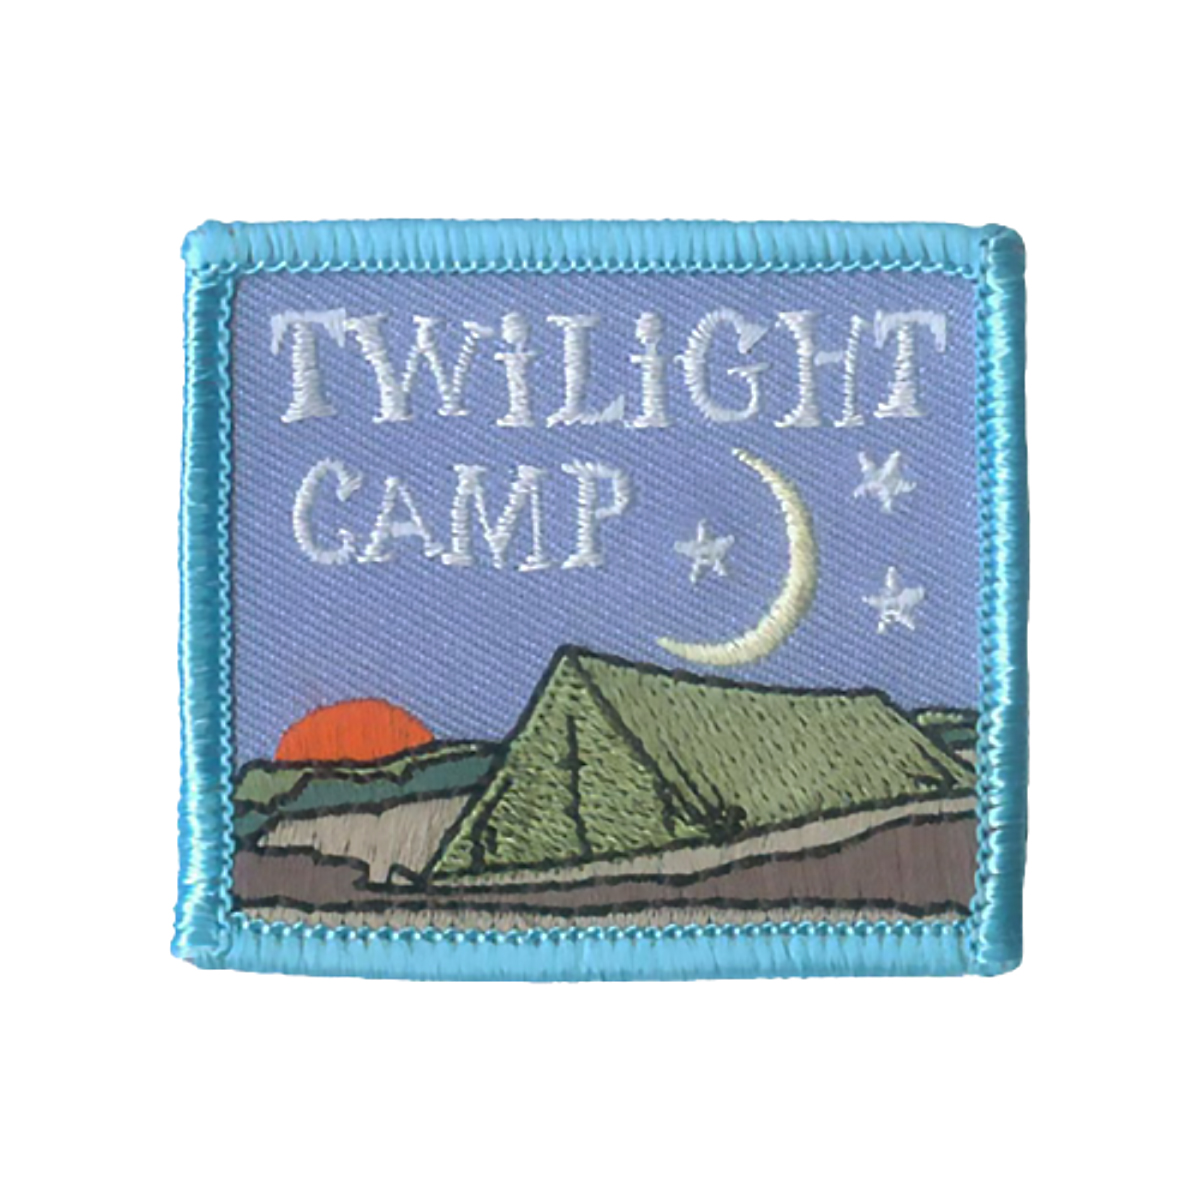 Twilight Camp - W